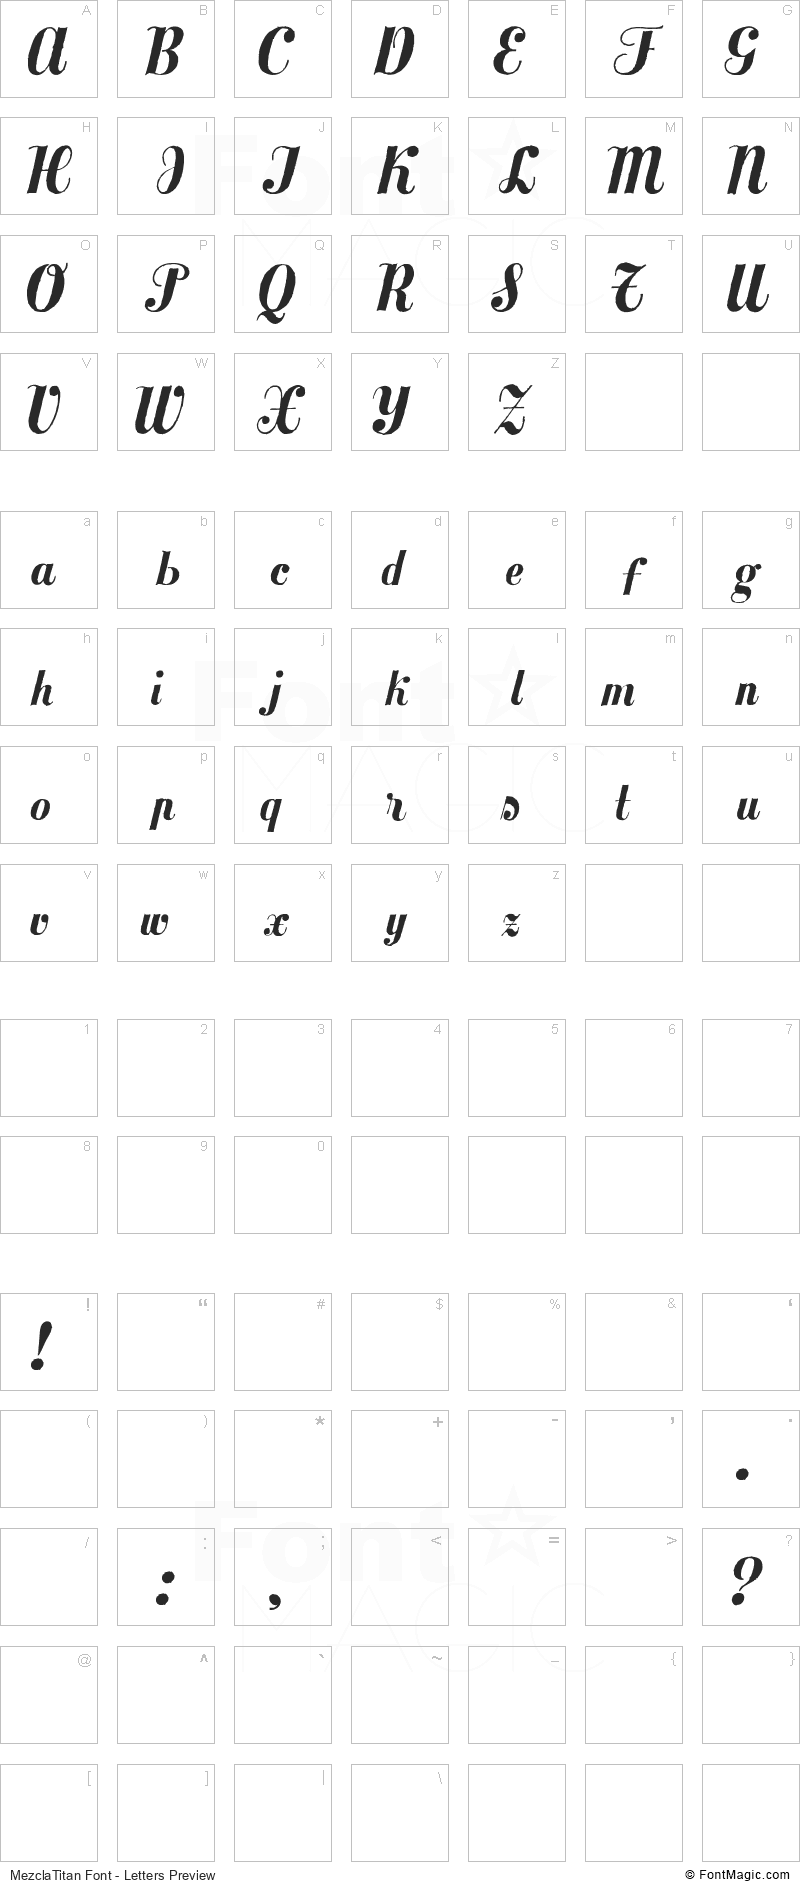 MezclaTitan Font - All Latters Preview Chart